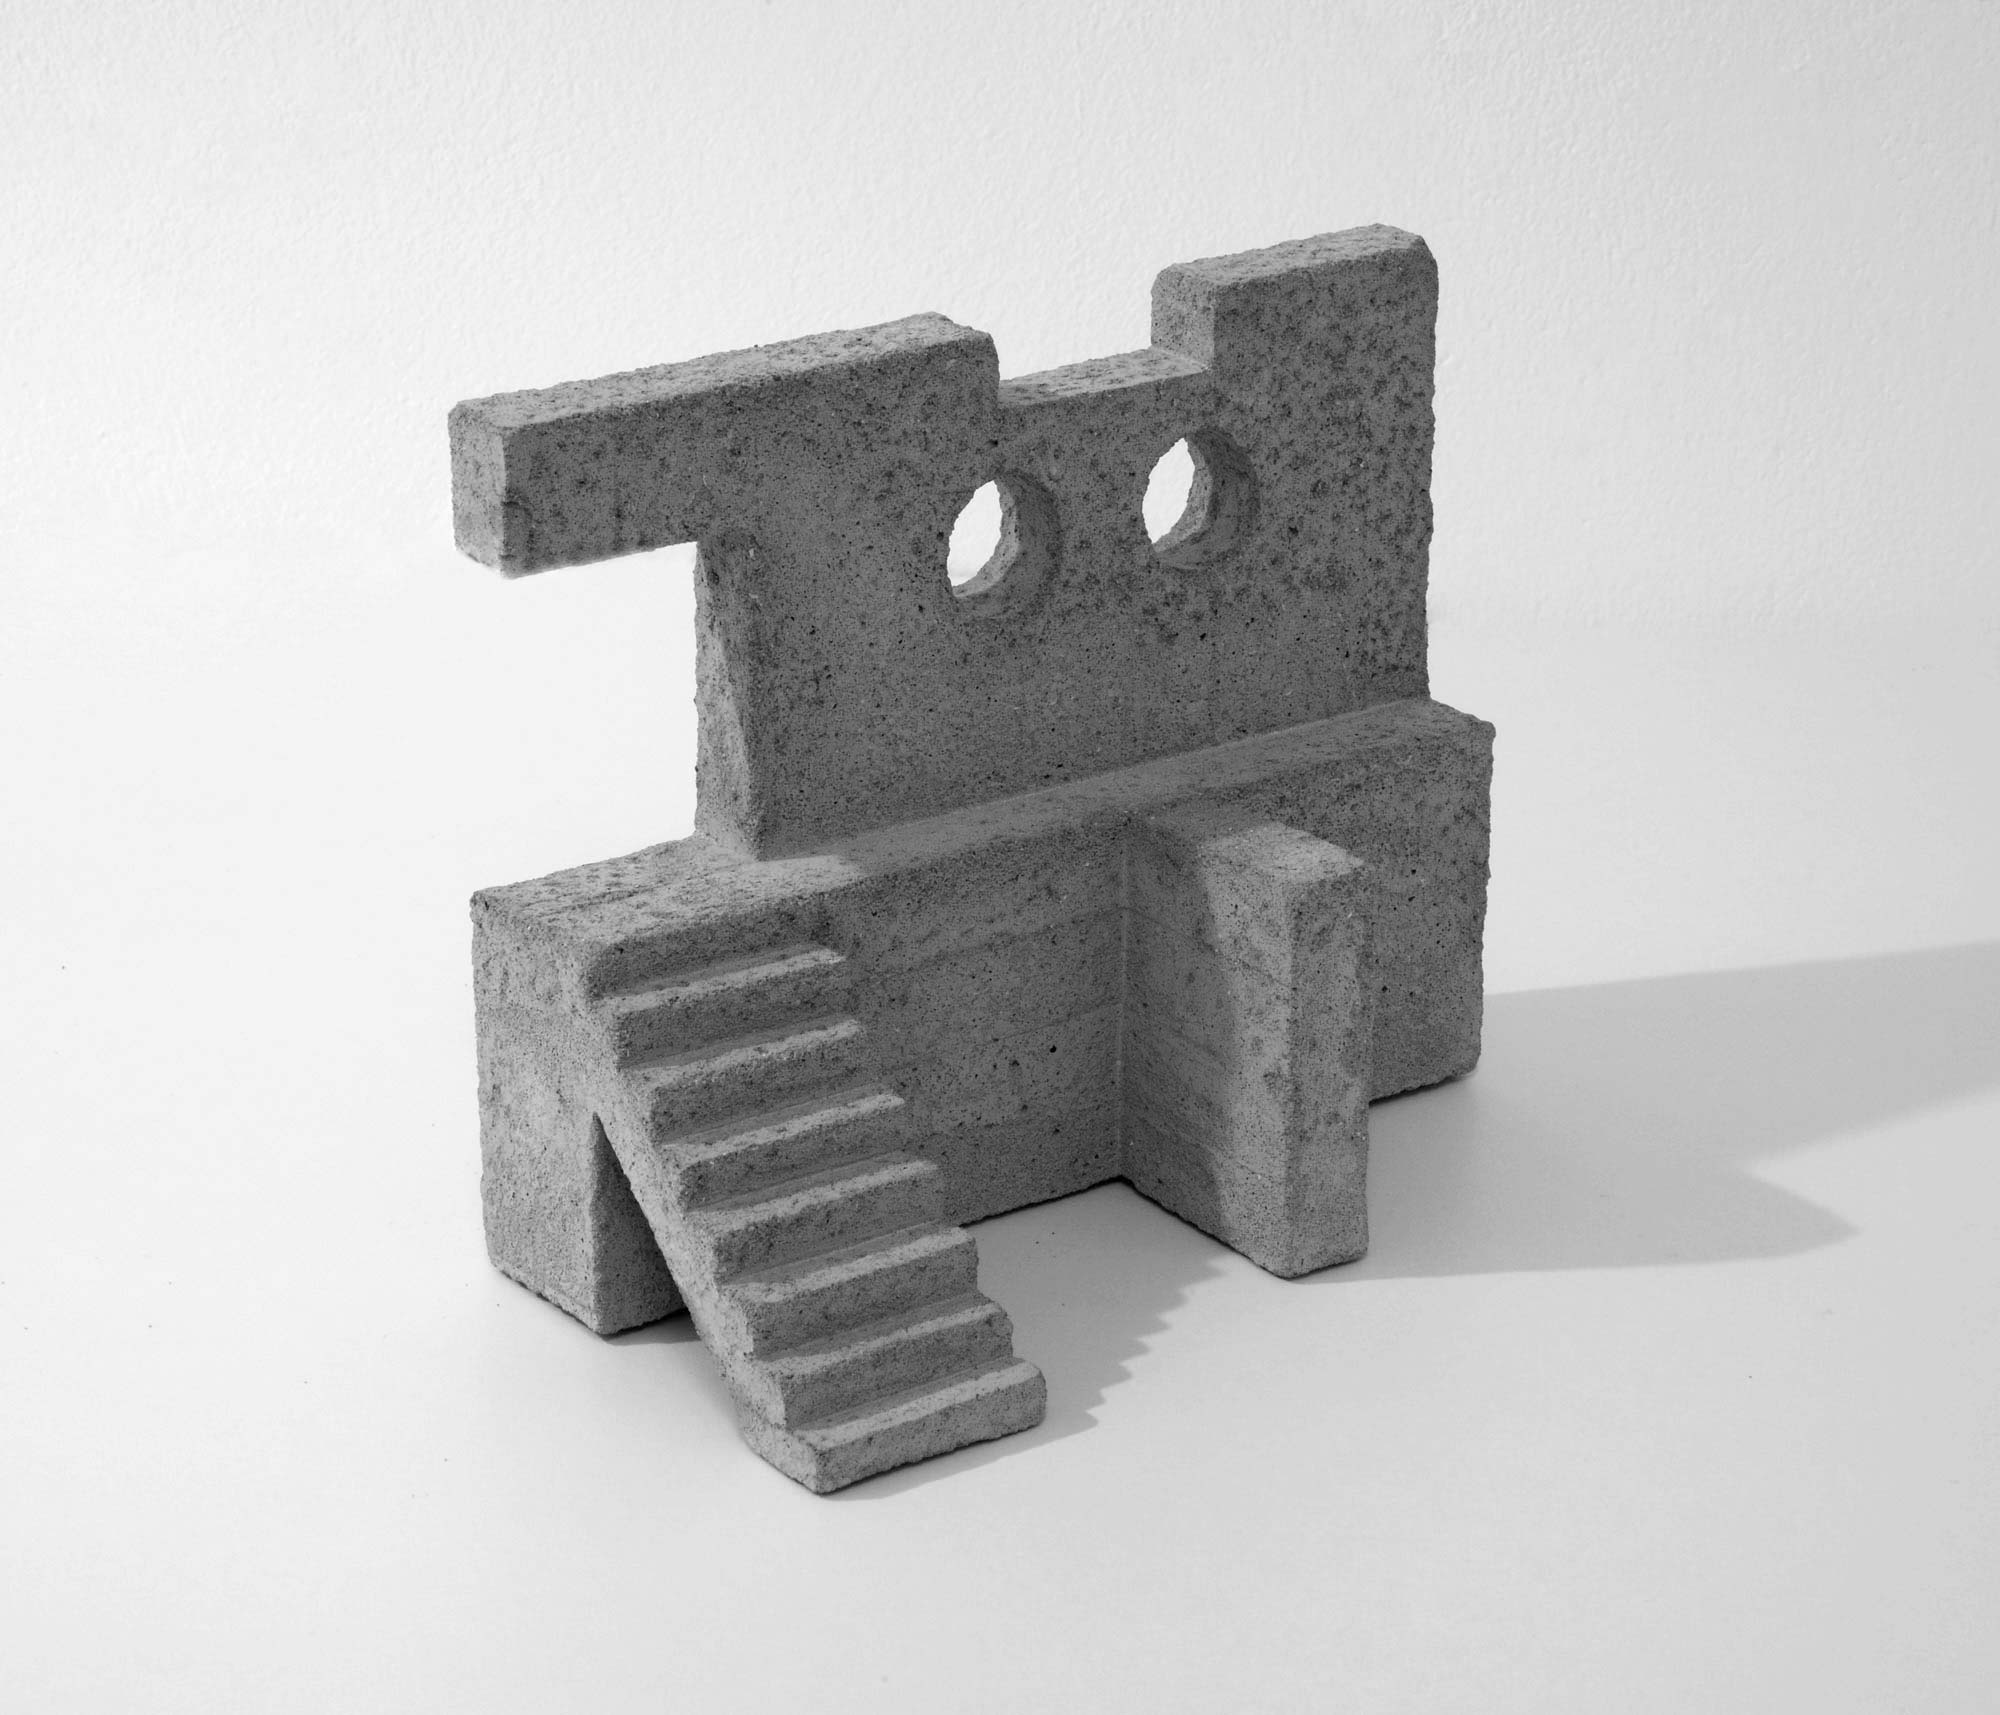 mattia listowski art design objet décoration sculpture béton moulage micro architecture maquette passage 3 édition limitée numérotée signée paris bruxelles 2019